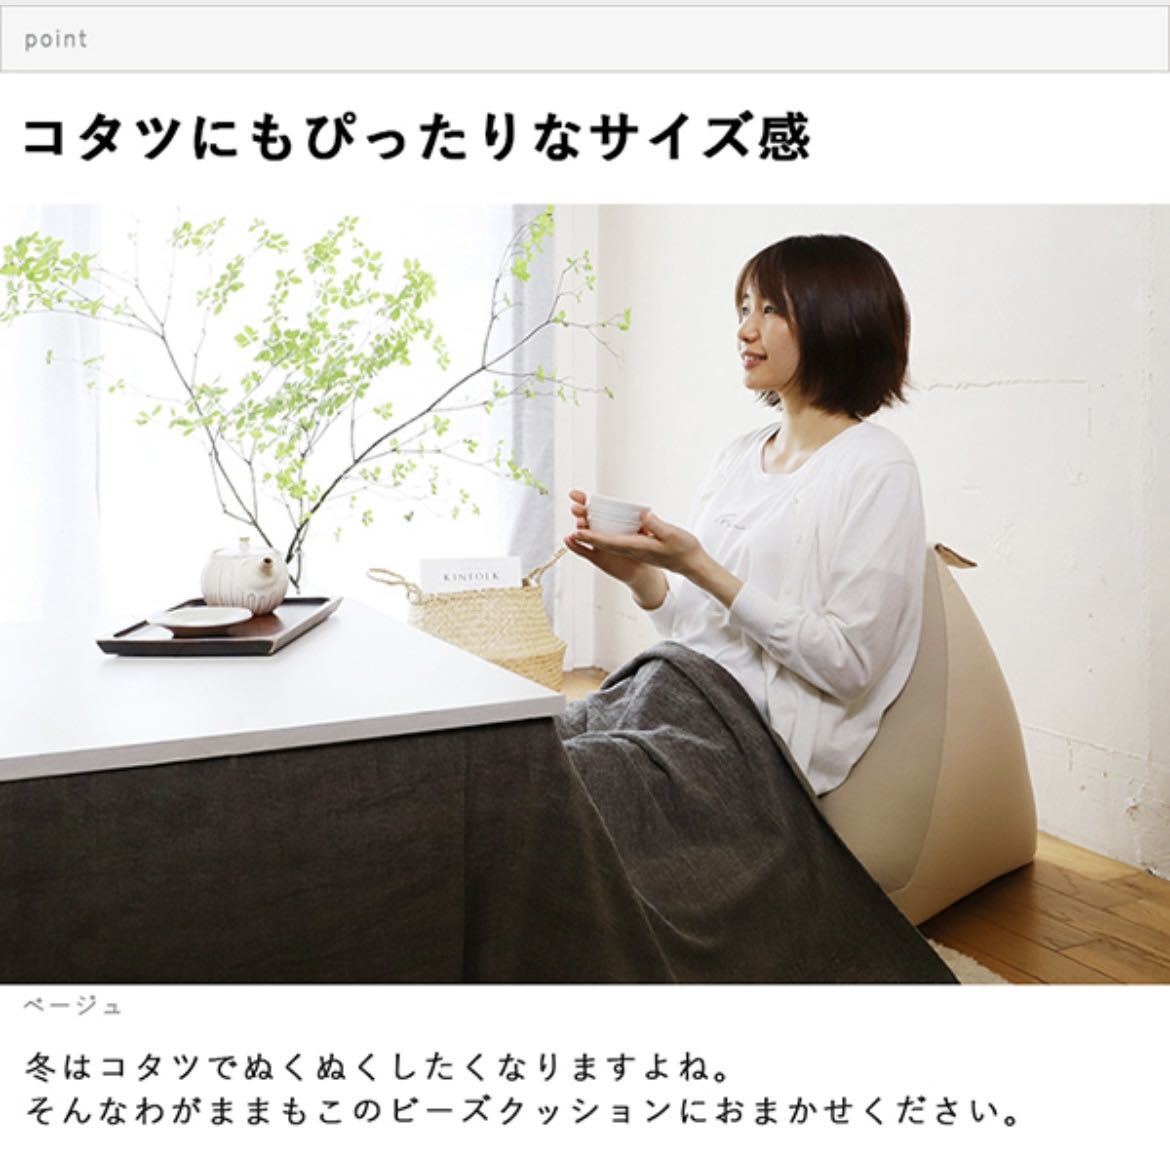  новый товар бисер подушка сделано в Японии низкий диван Северная Европа человек .dame. делать чтение .. соус сиденье "zaisu" текстильный домашнее животное ребенок низкий стол. одиночный подушка 